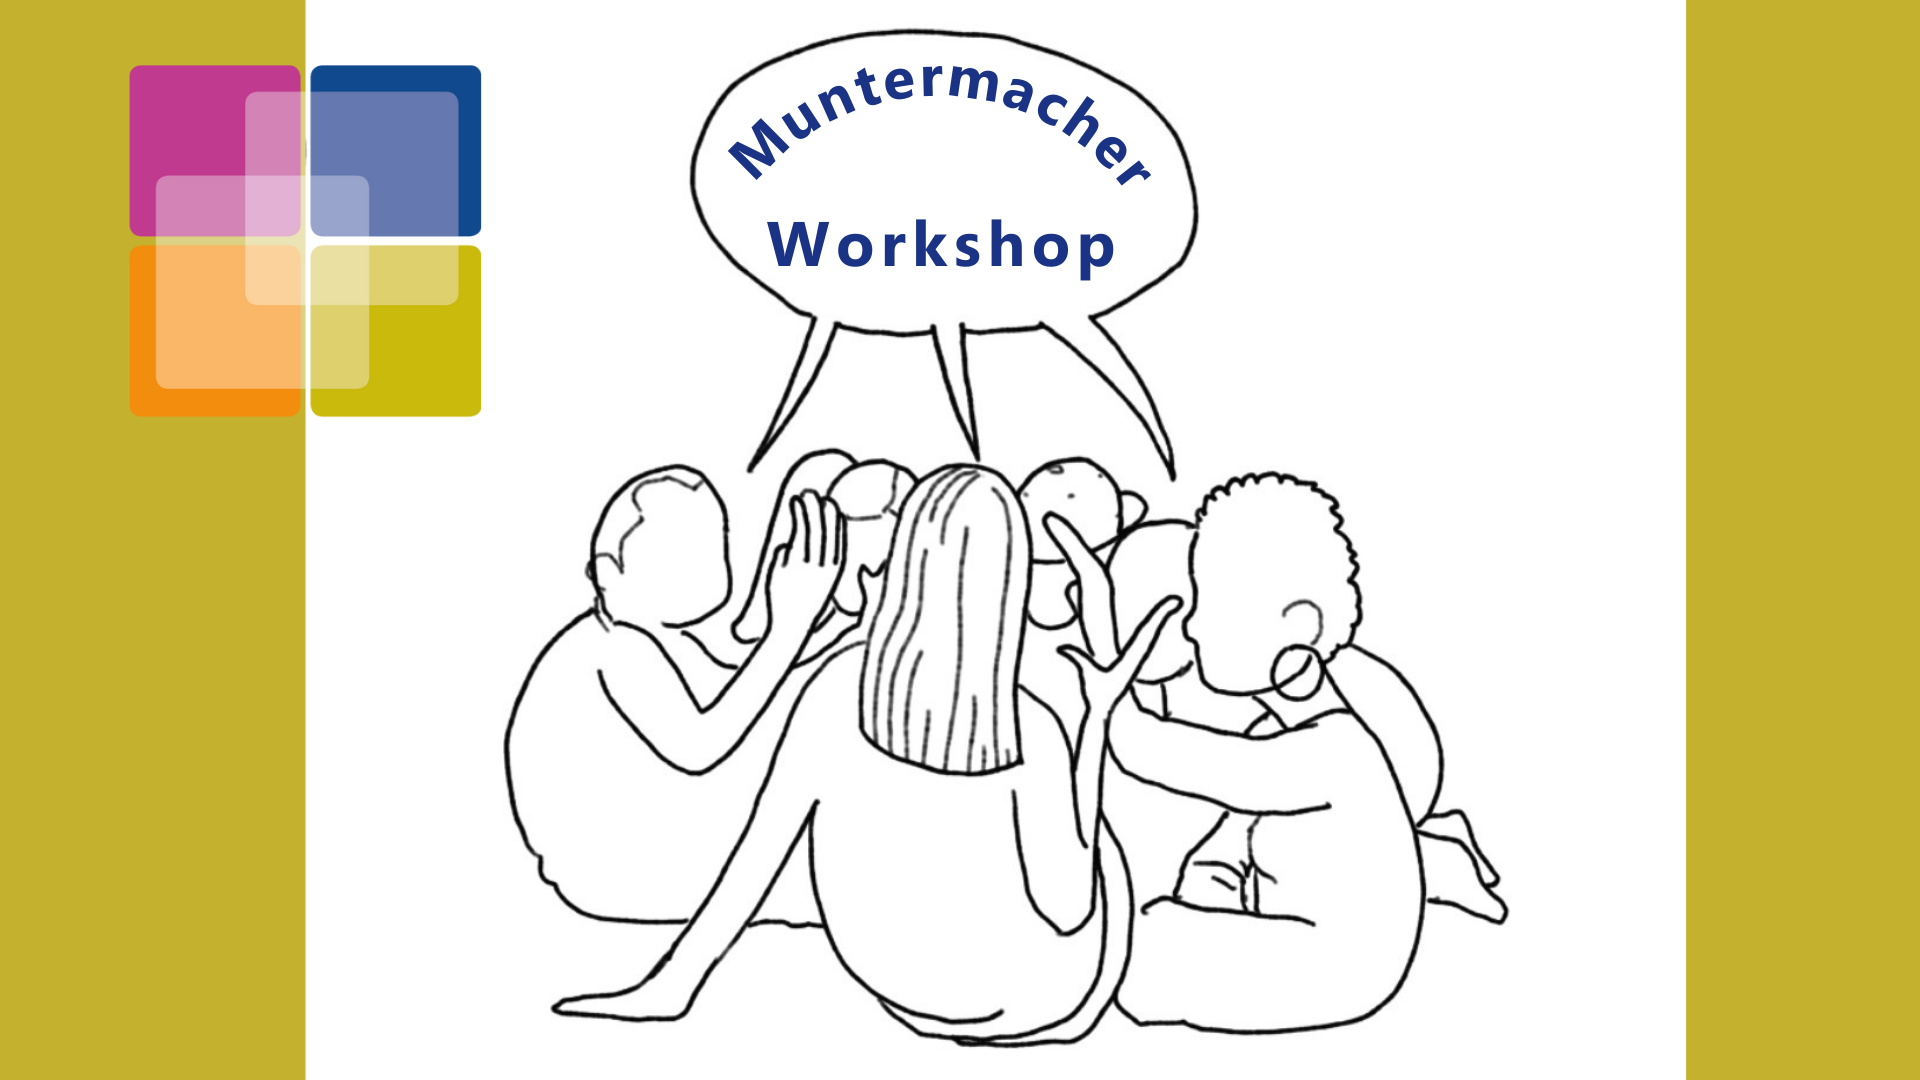 Online-Workshop: “Stärken von Freiwilligen erkennen und fördern” am 20.06. von 9-11 Uhr